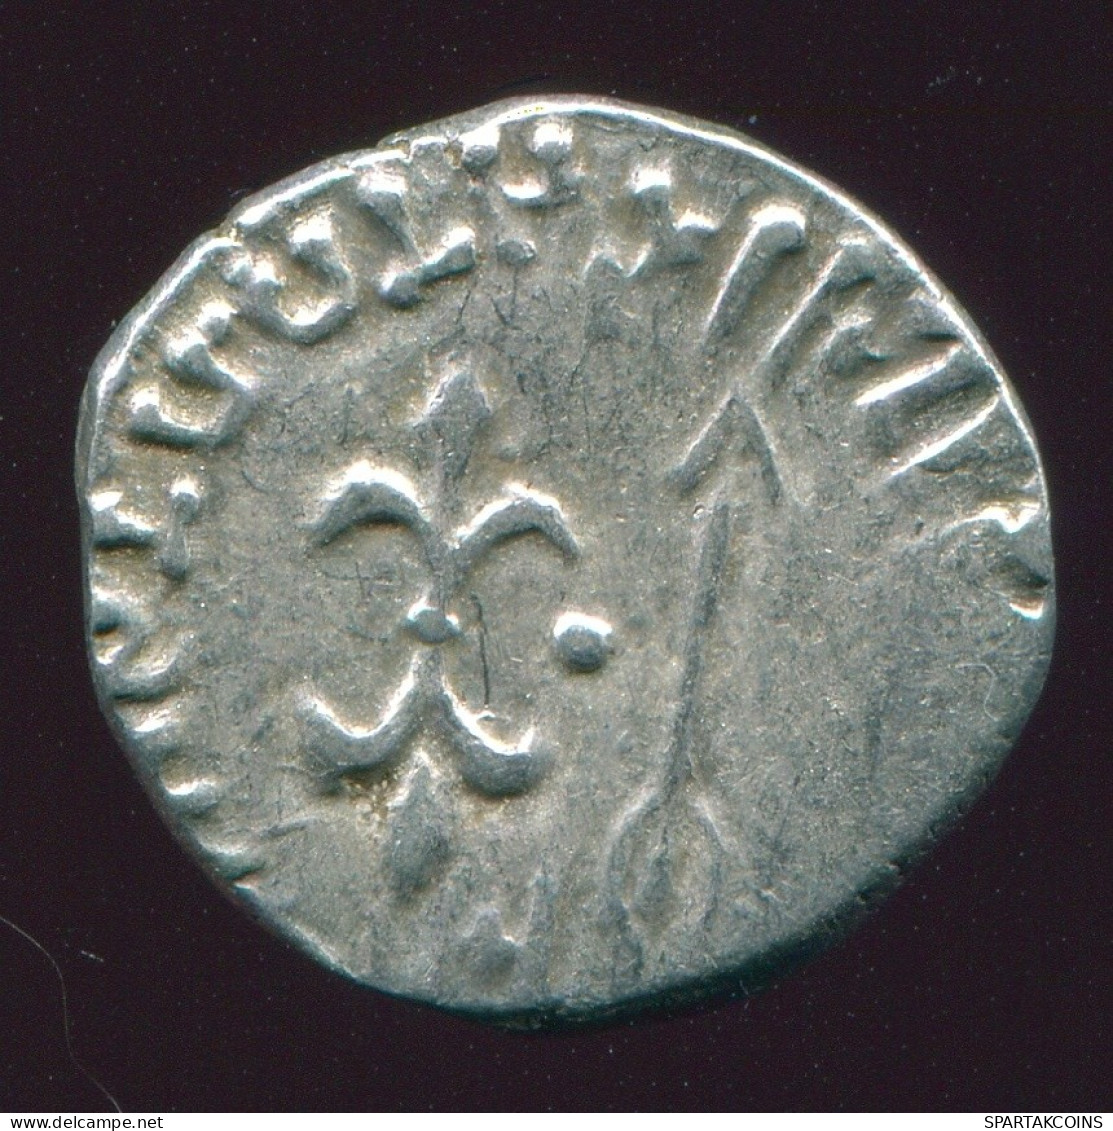 INDO-SKYTHIANS KSHATRAPAS King NAHAPANA AR Drachm 2.3g/15.4mm GRIECHISCHE Münze #GRK1601.33.D.A - Griekenland